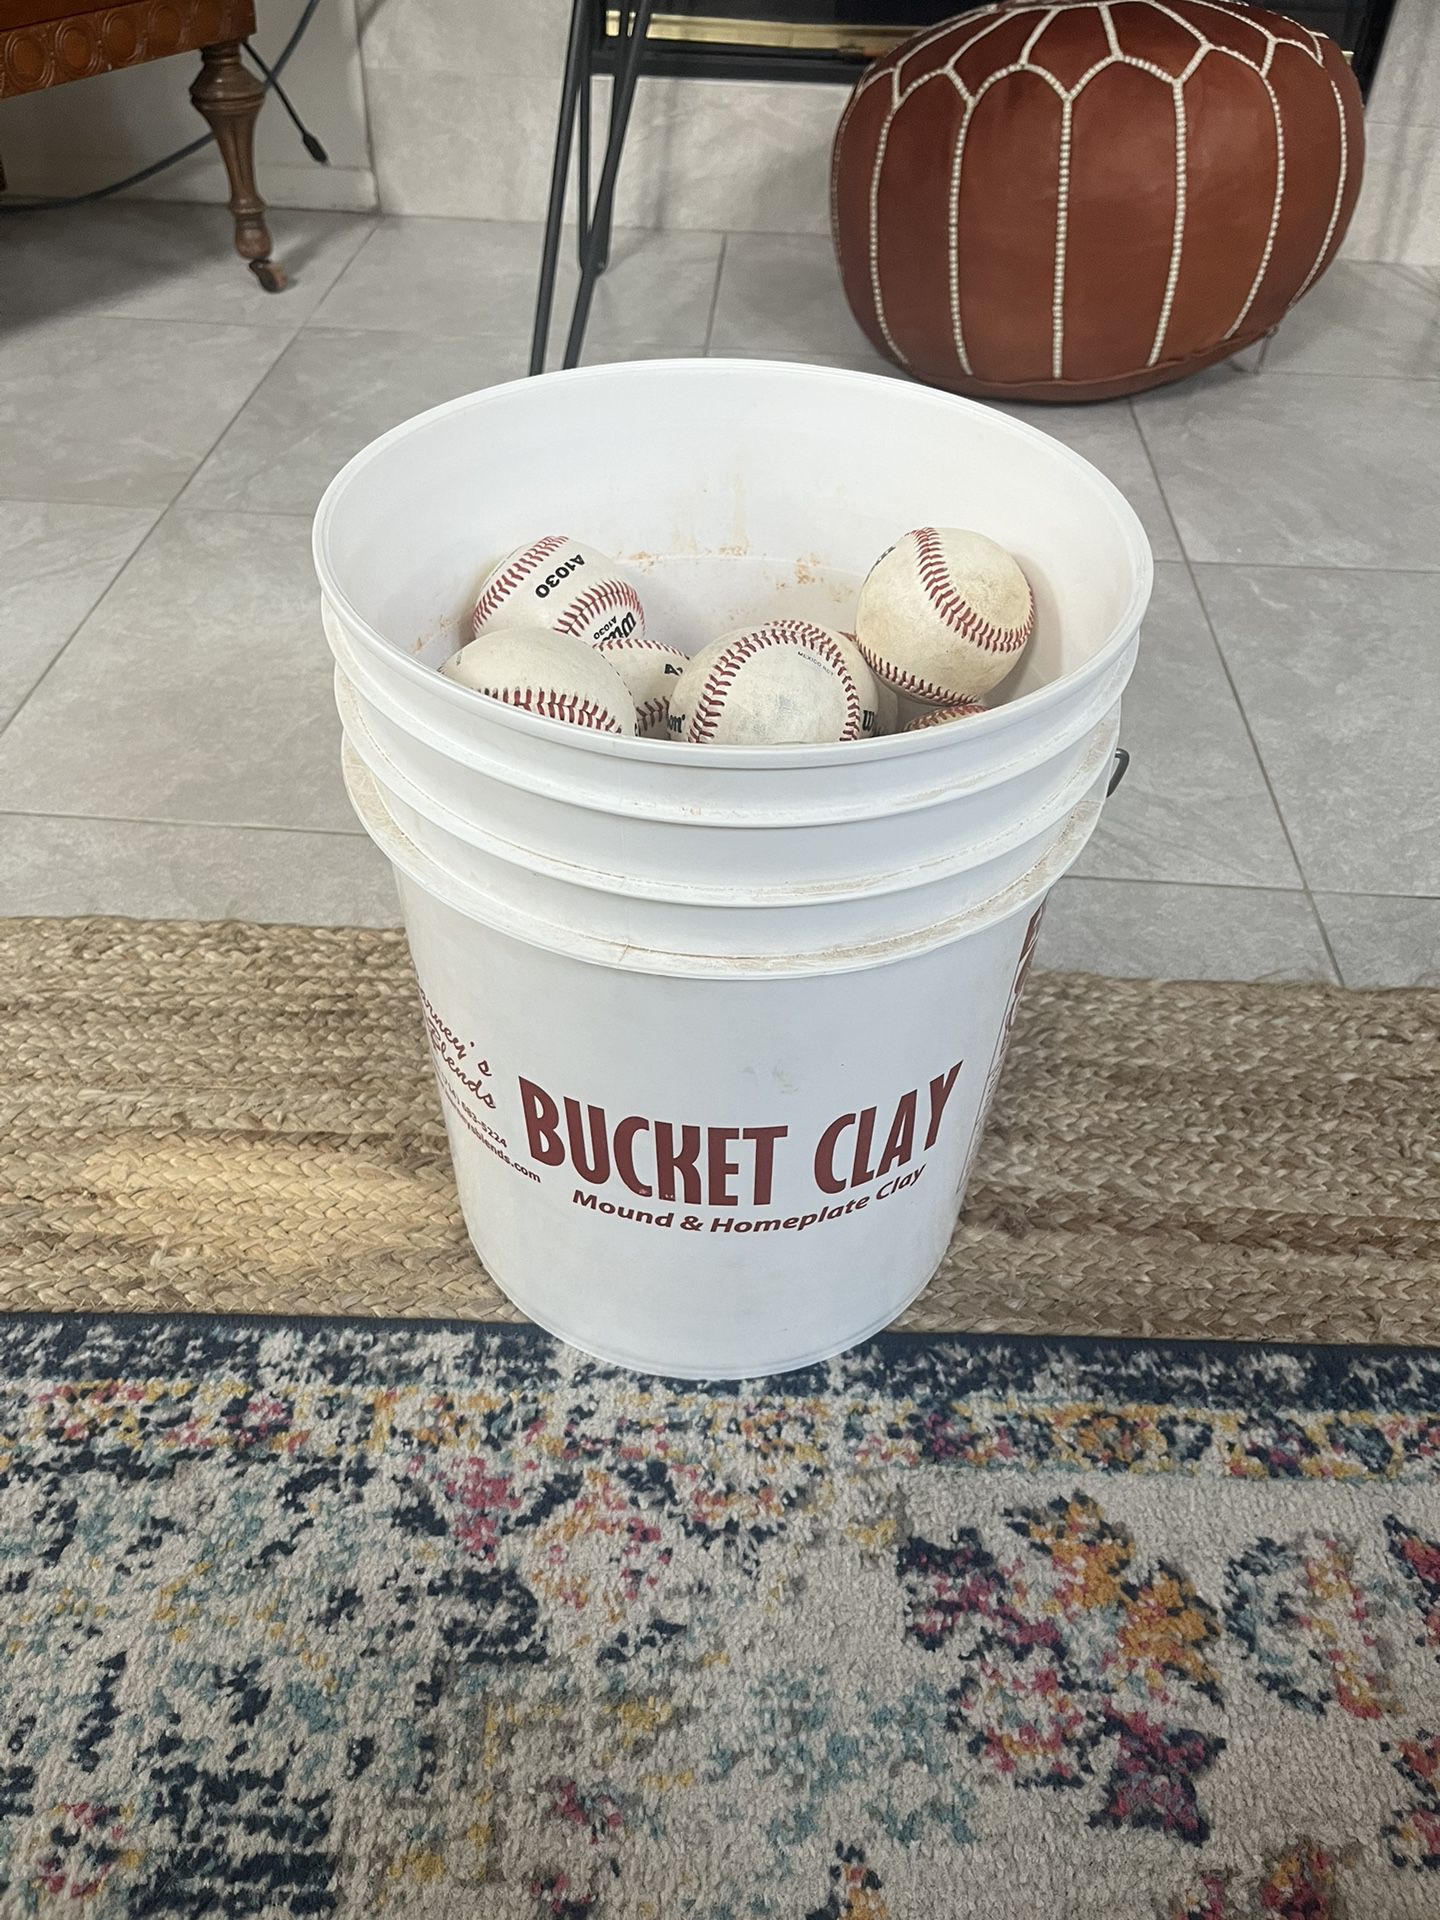 Bucket full of baseballs for Sale in Houston, TX - OfferUp